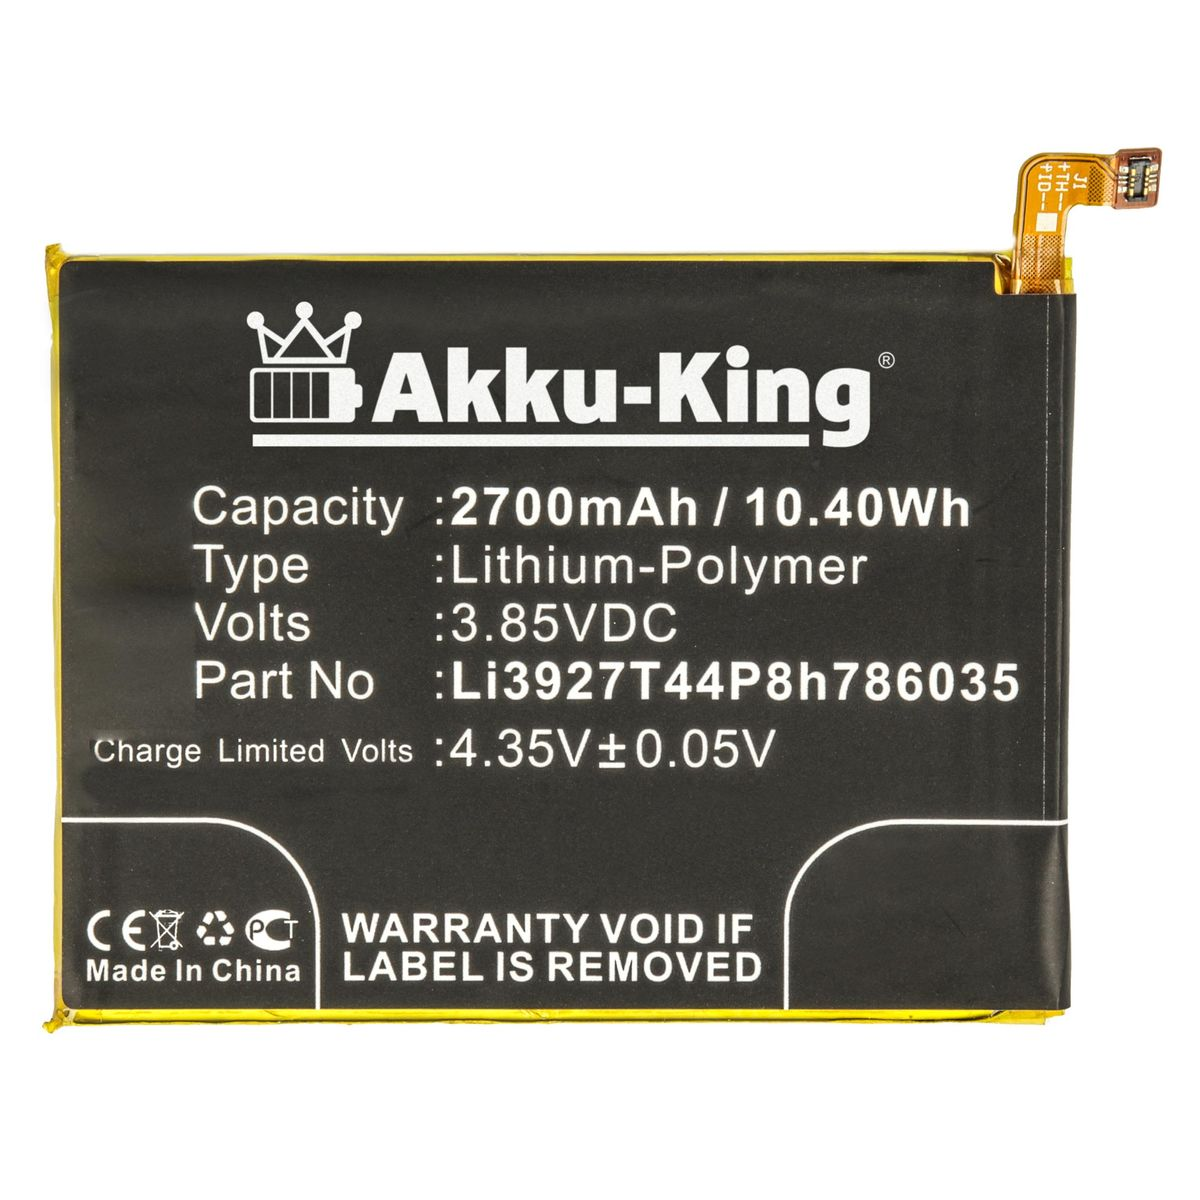 Handy-Akku, Li-Polymer 2700mAh AKKU-KING Volt, mit ZTE Akku 3.85 Li3927T44P8h786035 kompatibel